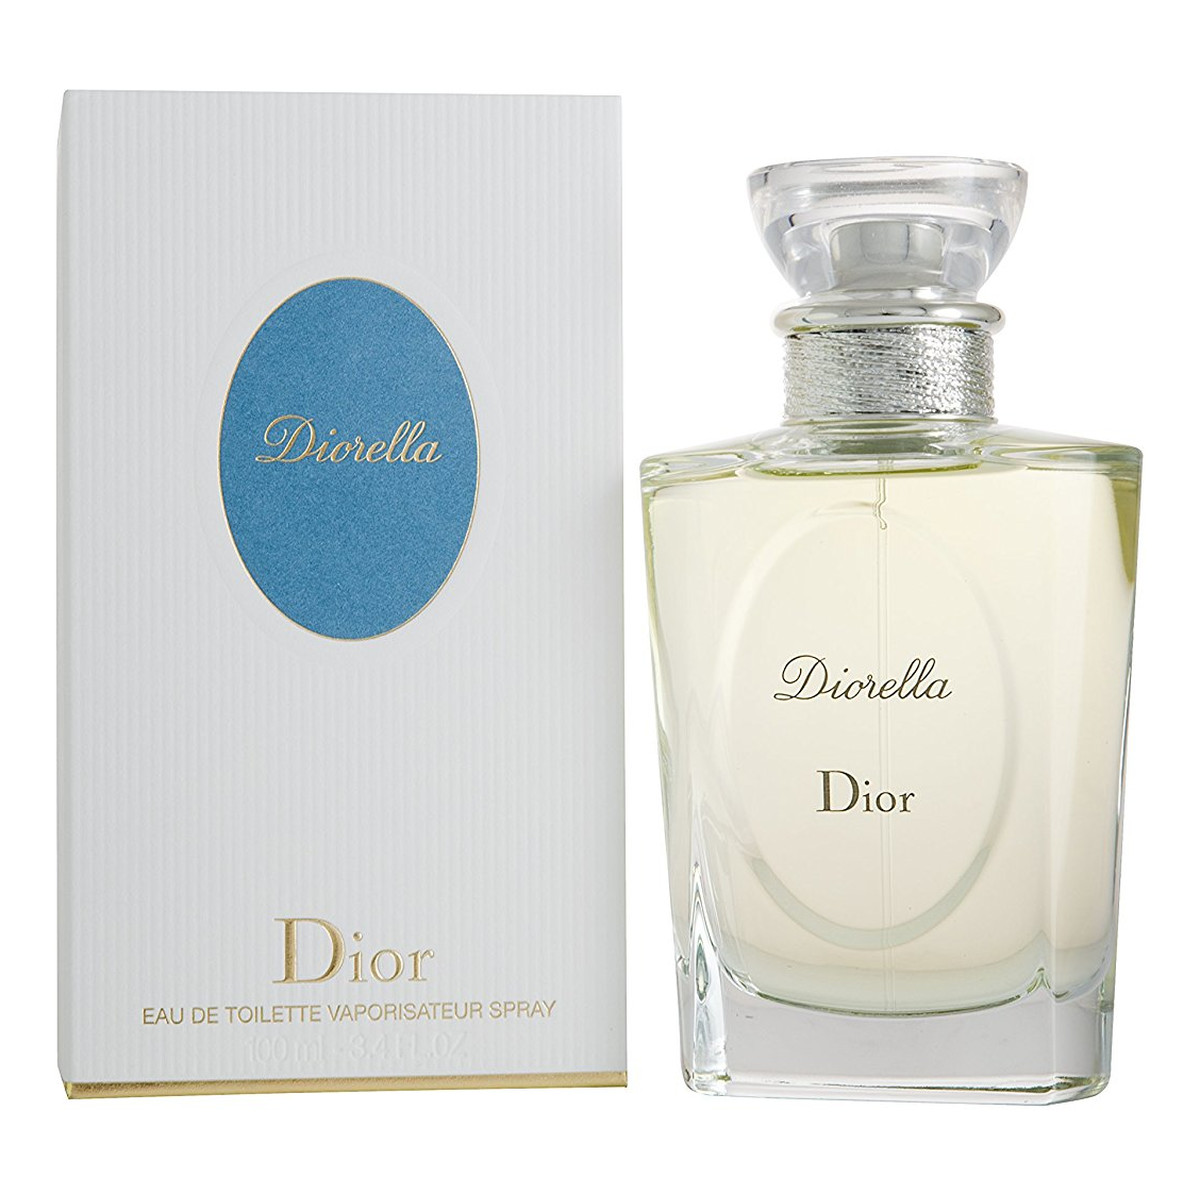 Dior Diorella woda toaletowa 100ml